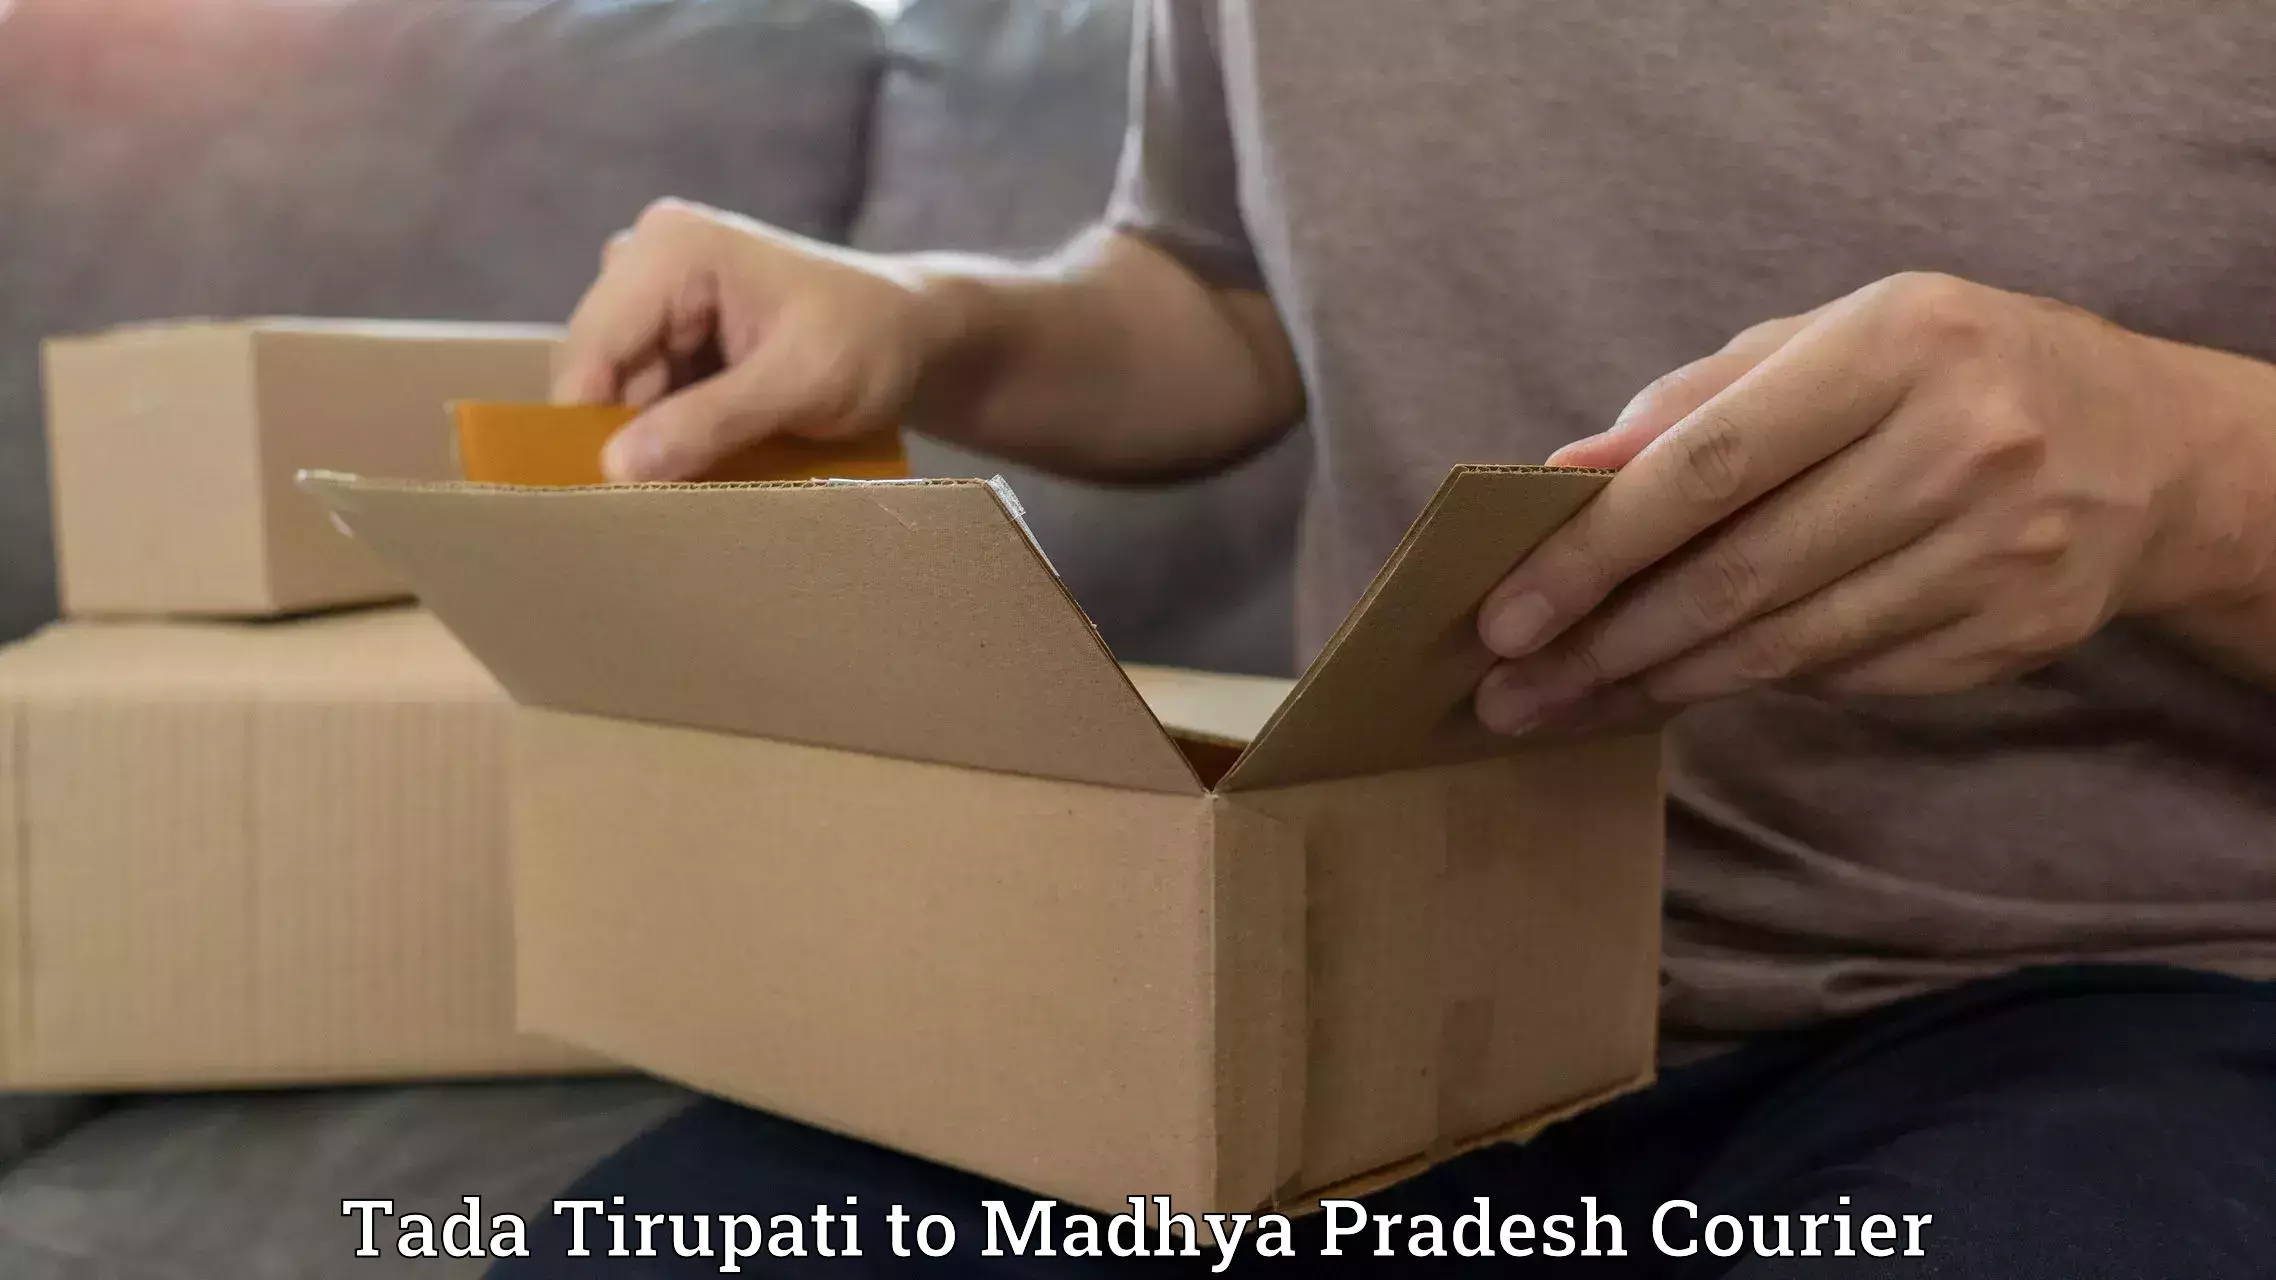 Premium courier solutions Tada Tirupati to Jatara